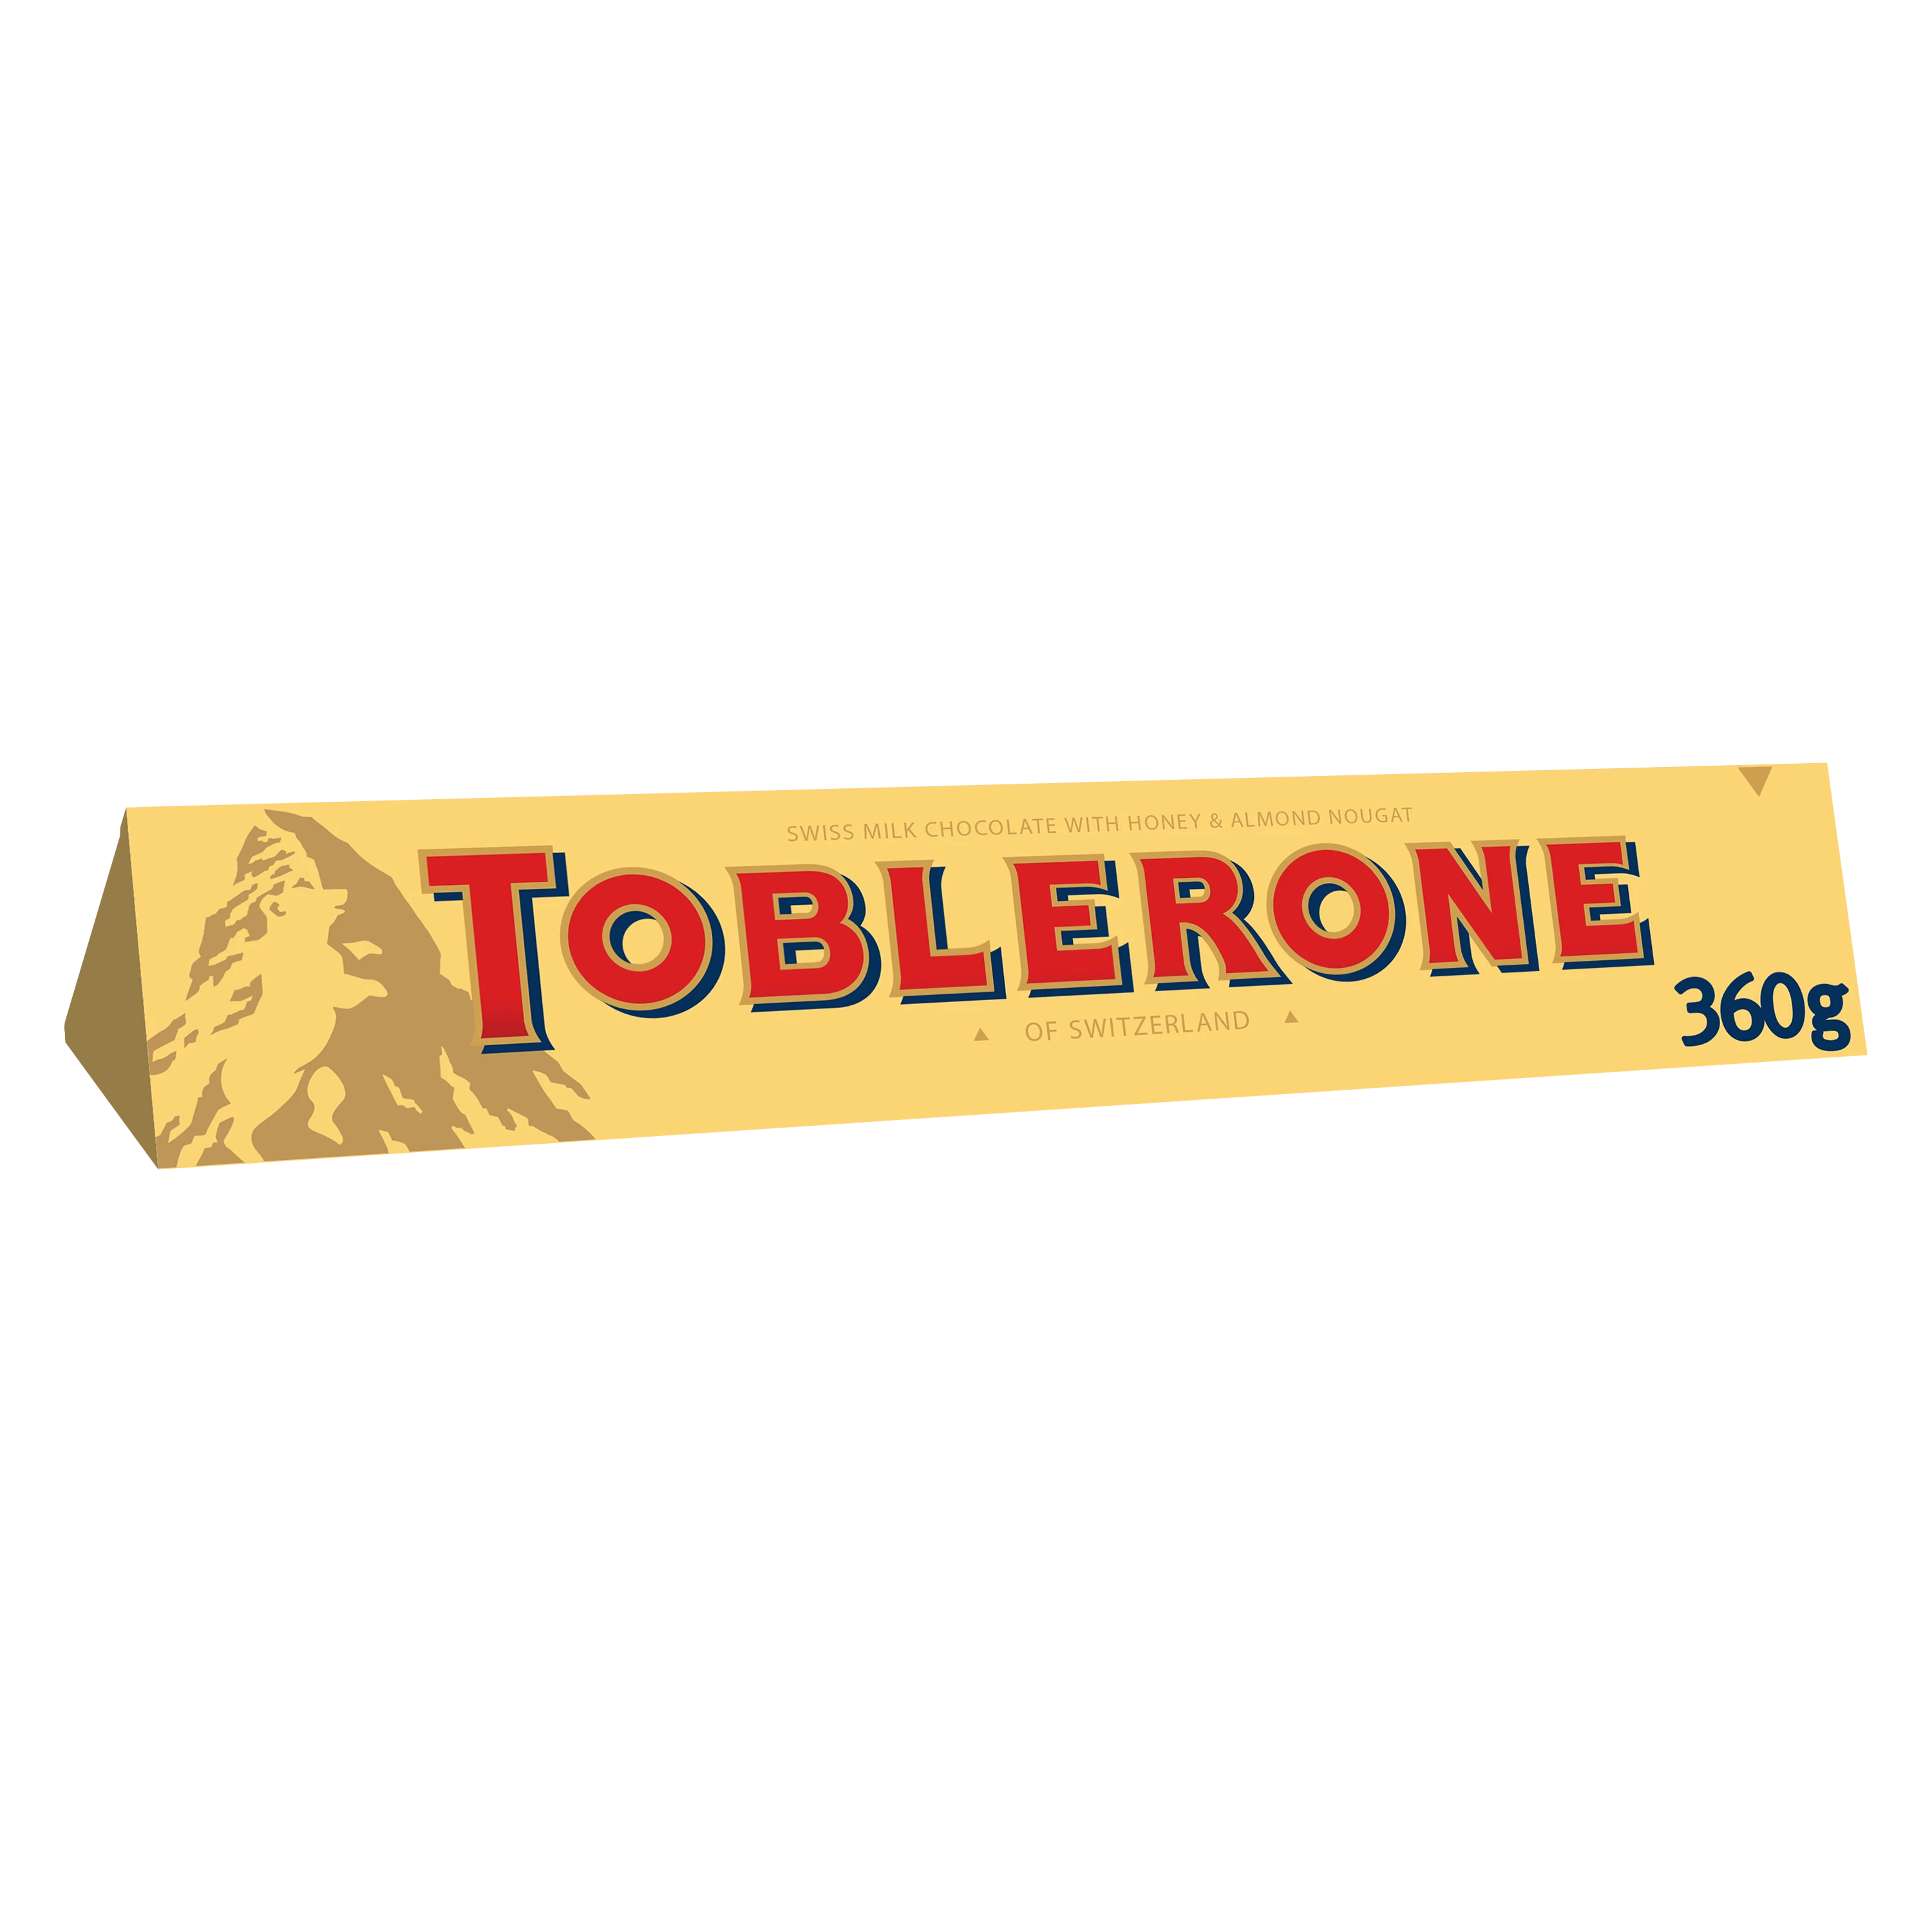 瑞士牛奶巧克力蜂蜜杏仁牛轧糖 360g - TOBLERONE